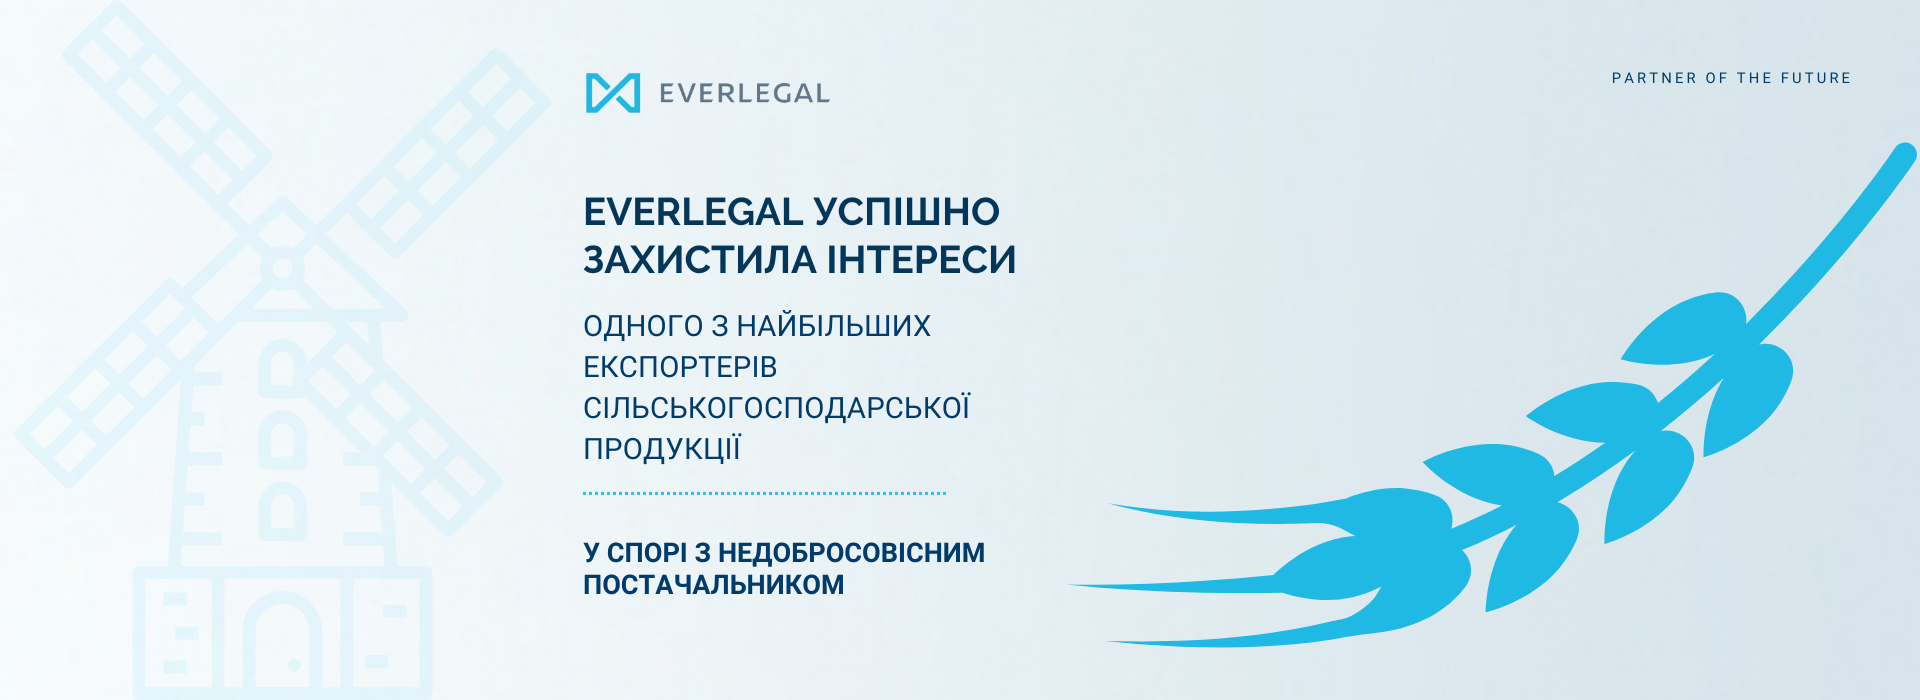 EVERLEGAL успішно захистила інтереси Louis Dreyfus Company Ukraine у складному спорі з постачальником